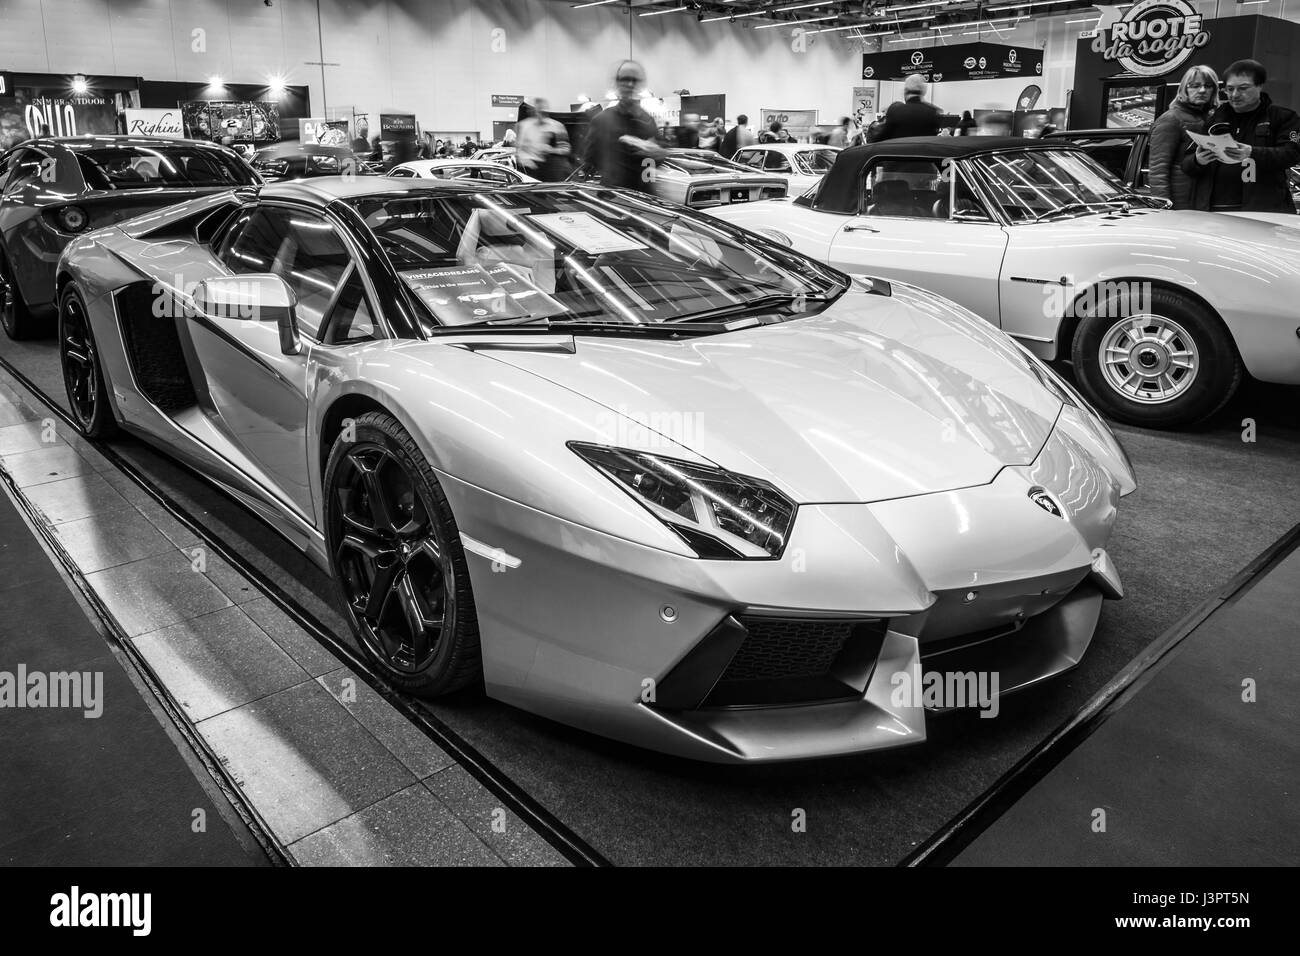 STUTTGART, ALLEMAGNE - Mars 03, 2017 : voiture de sport Lamborghini Aventador LP 700-4, 2014. Noir et blanc. Plus grand d'Europe Exposition de voitures classiques 'RETRO' classiques Banque D'Images